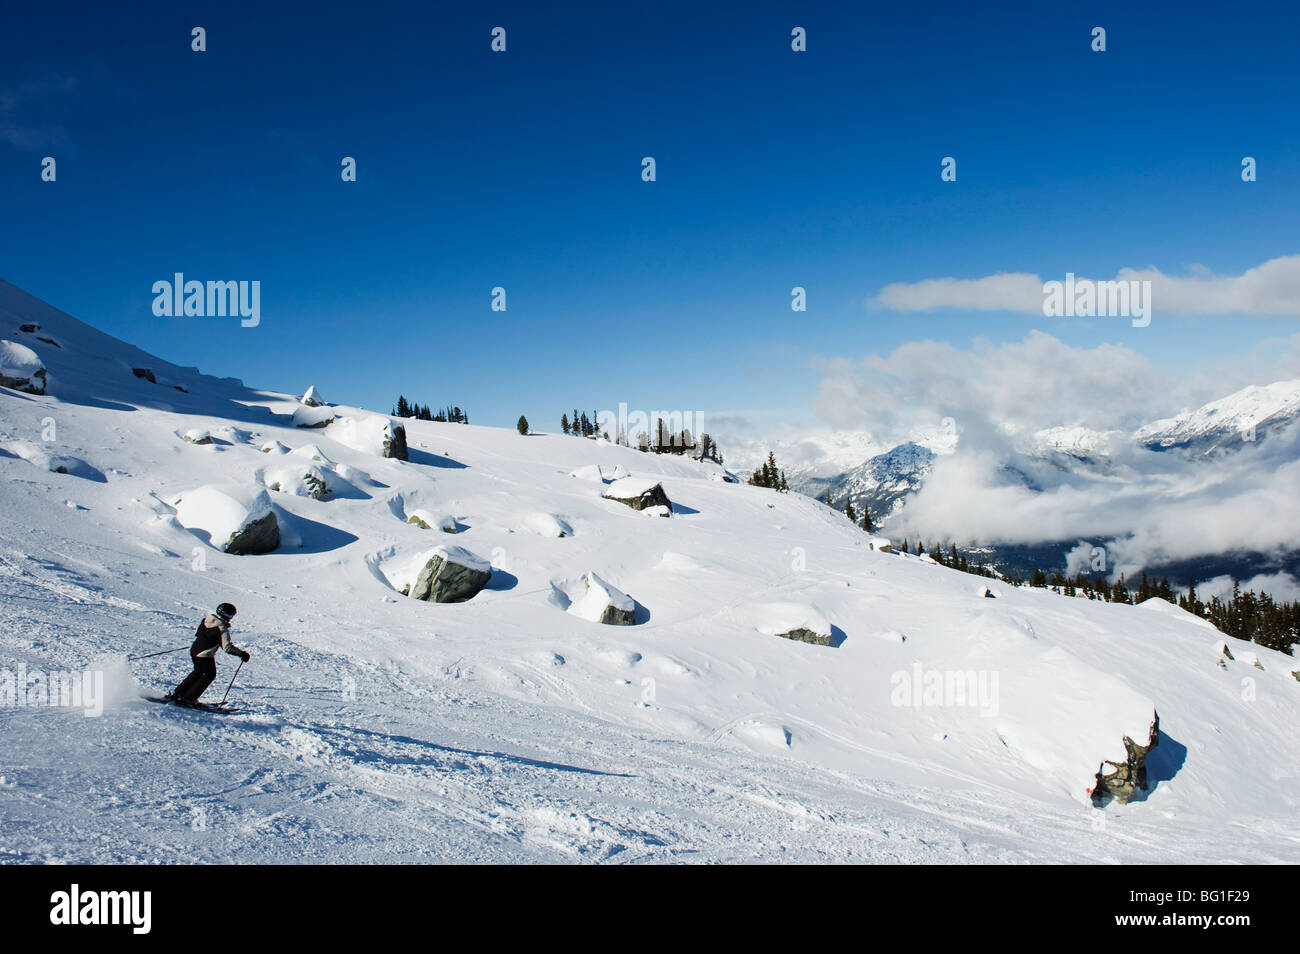 Skifahrer im Whistler Mountain Resort, Austragungsort der 2010 Olympischen Winterspiele, Britisch-Kolumbien, Kanada, Nordamerika Stockfoto